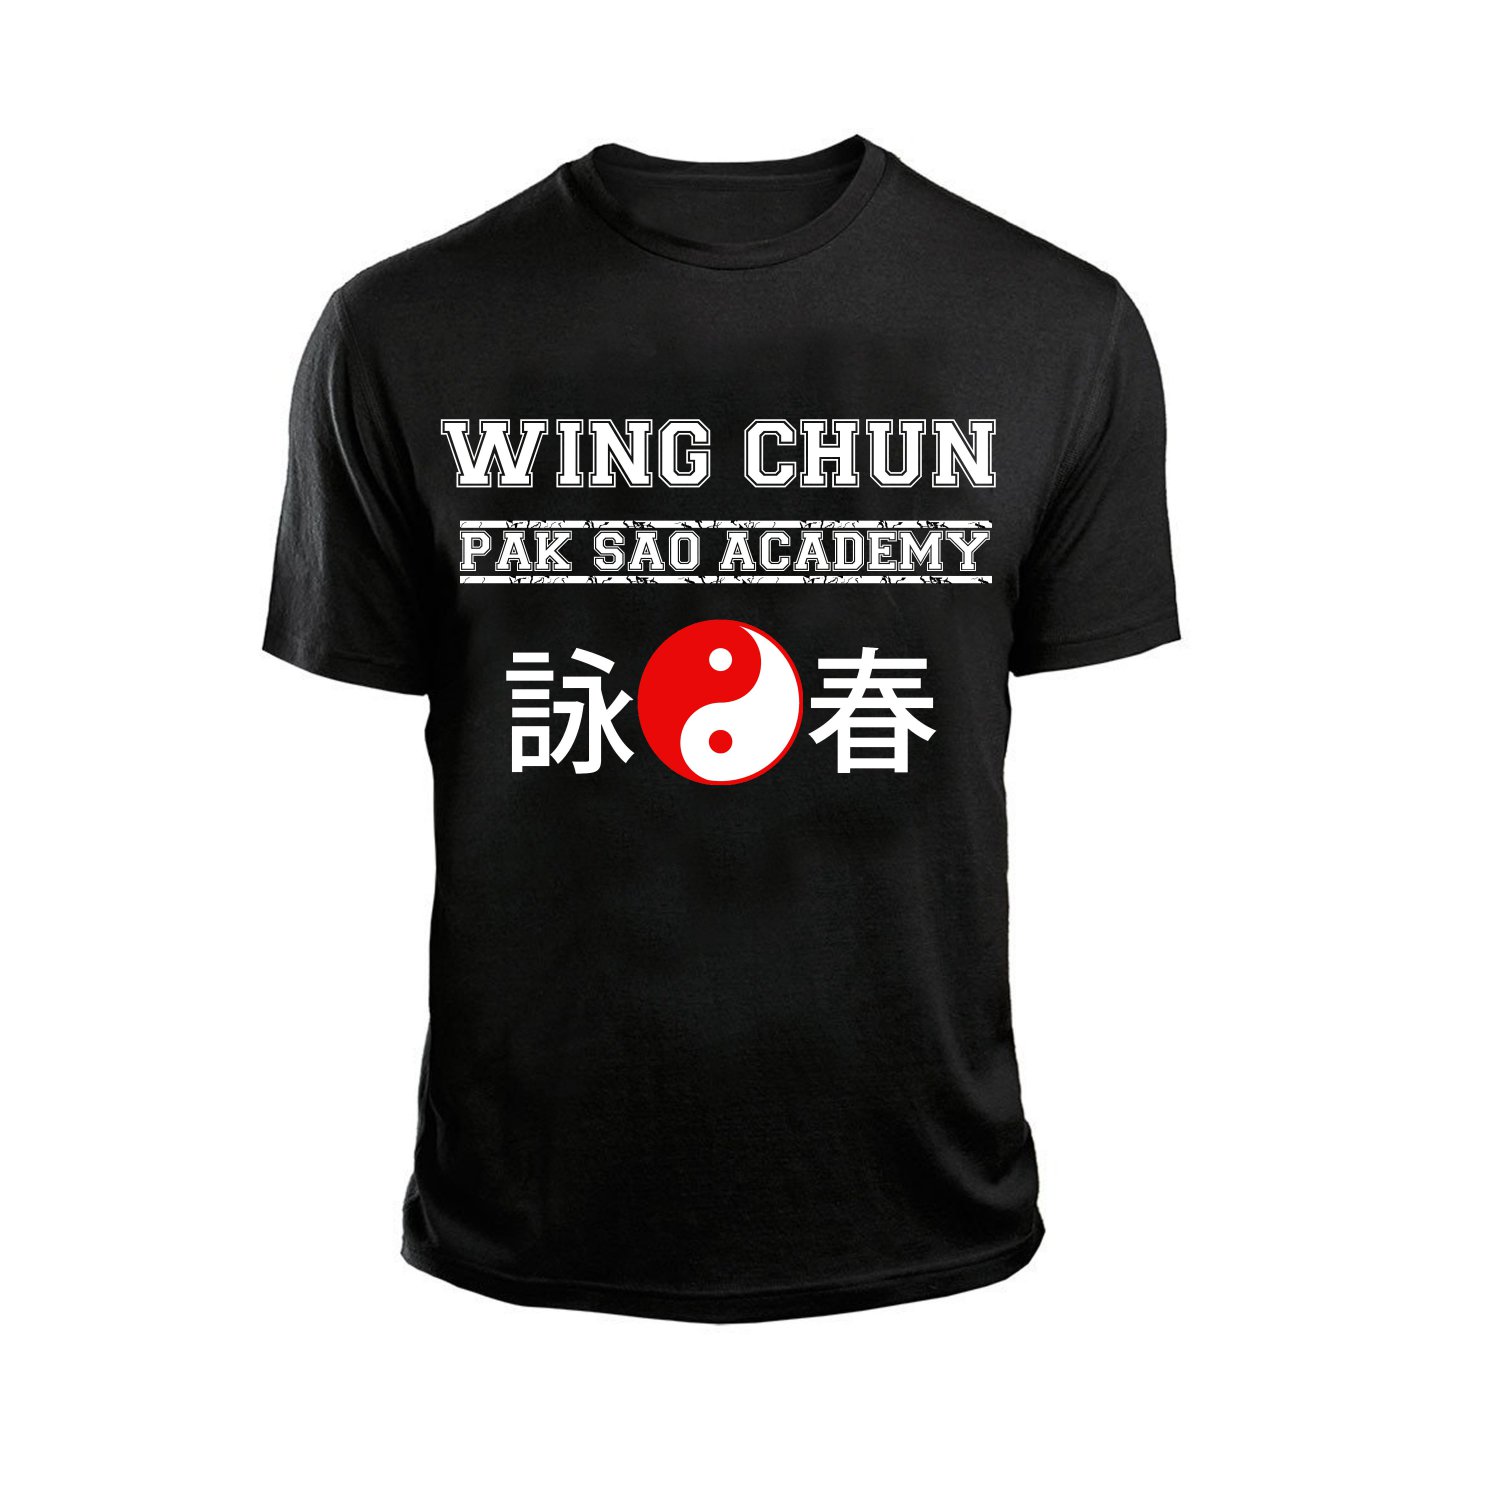 AT1400A-L  Wing Chun Pak Sao Academy Black tee chinese kung fu martial arts shaolin